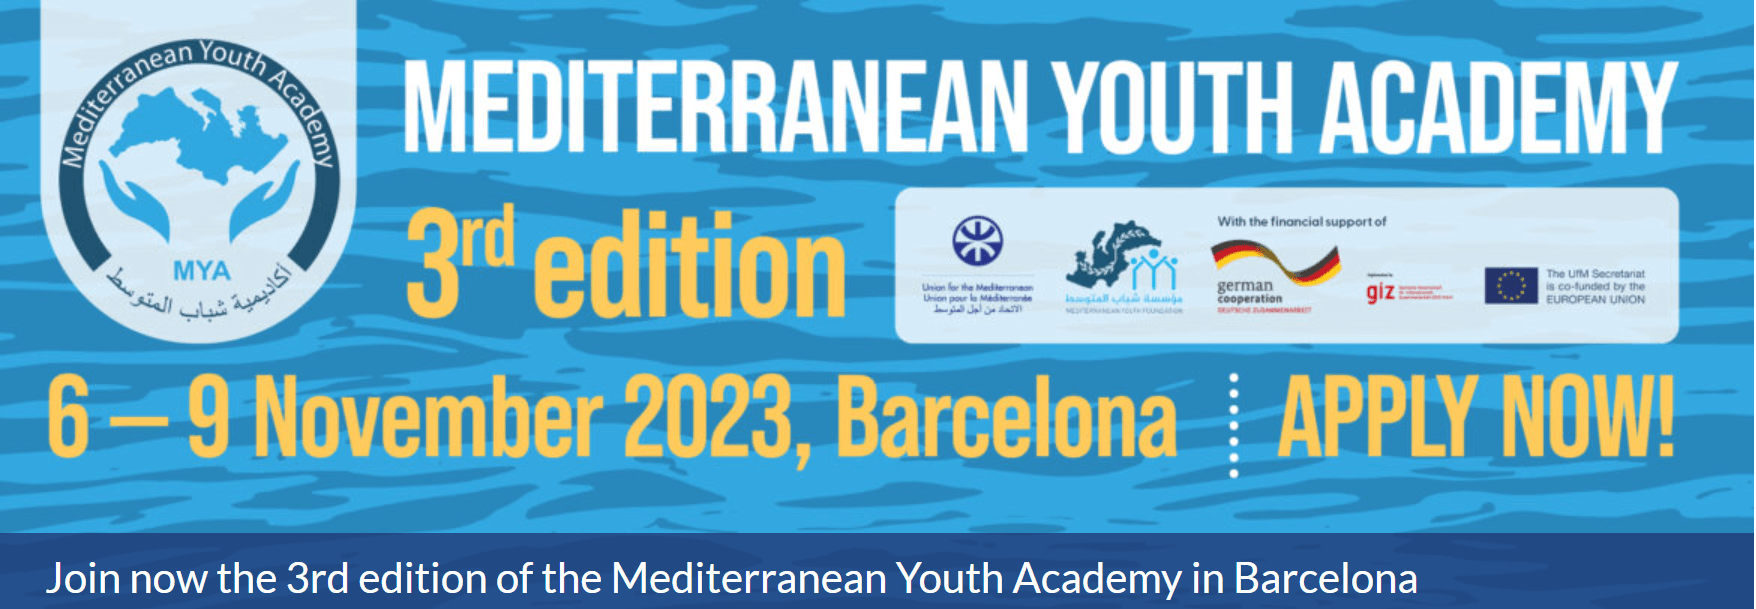 Mediterranean Youth Academy